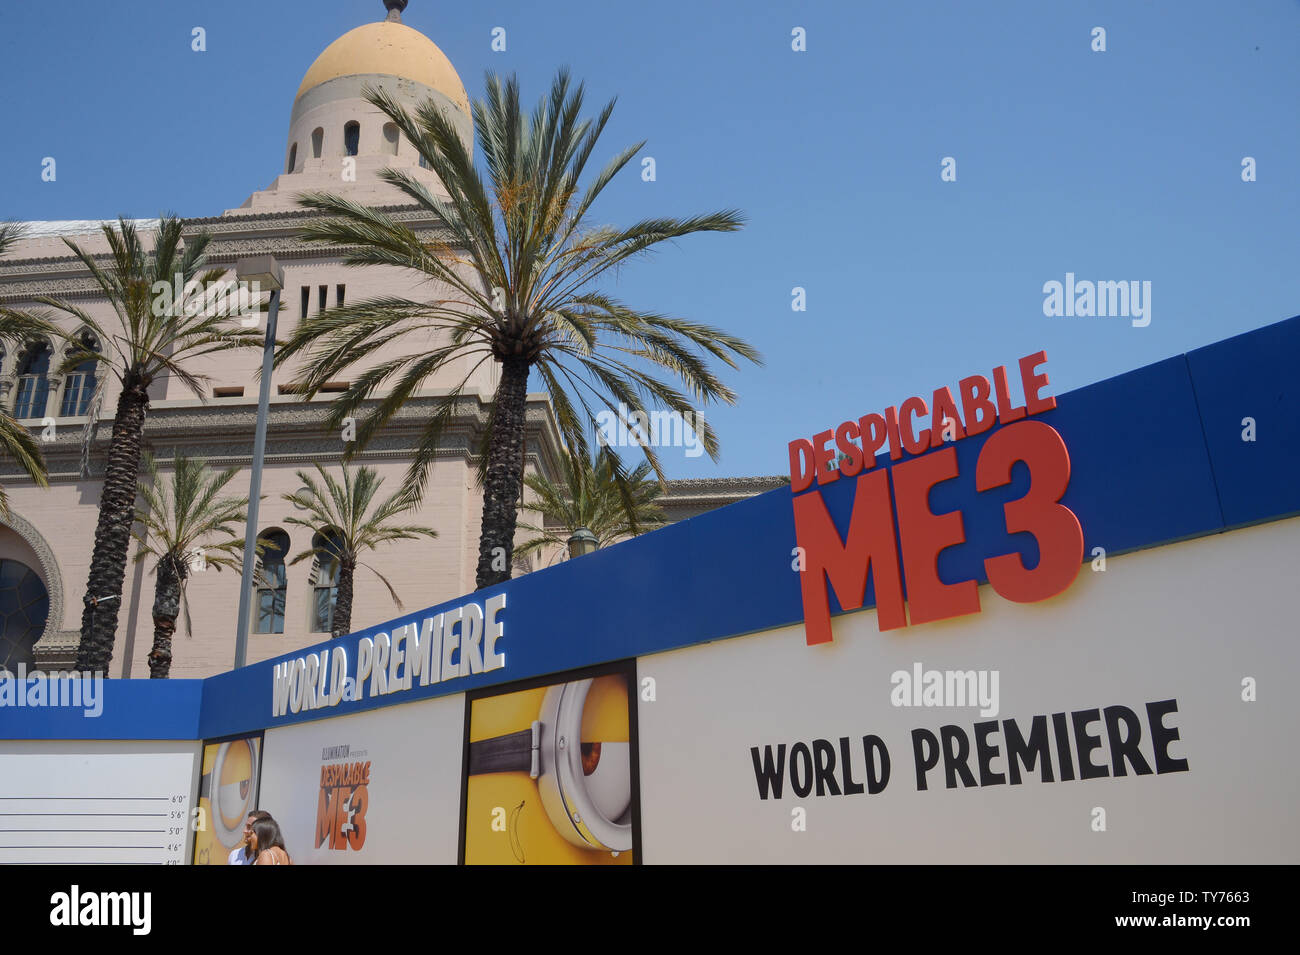 Die Ankunft der "espicable Mir 3' ist im Shrine Auditorium in Los Angeles  am 24. Juni 2017 gezeigt. Handlung: Eine geheimnisvolle Fremde zeigt sich  Gru zu informieren, daß er hat eine lange